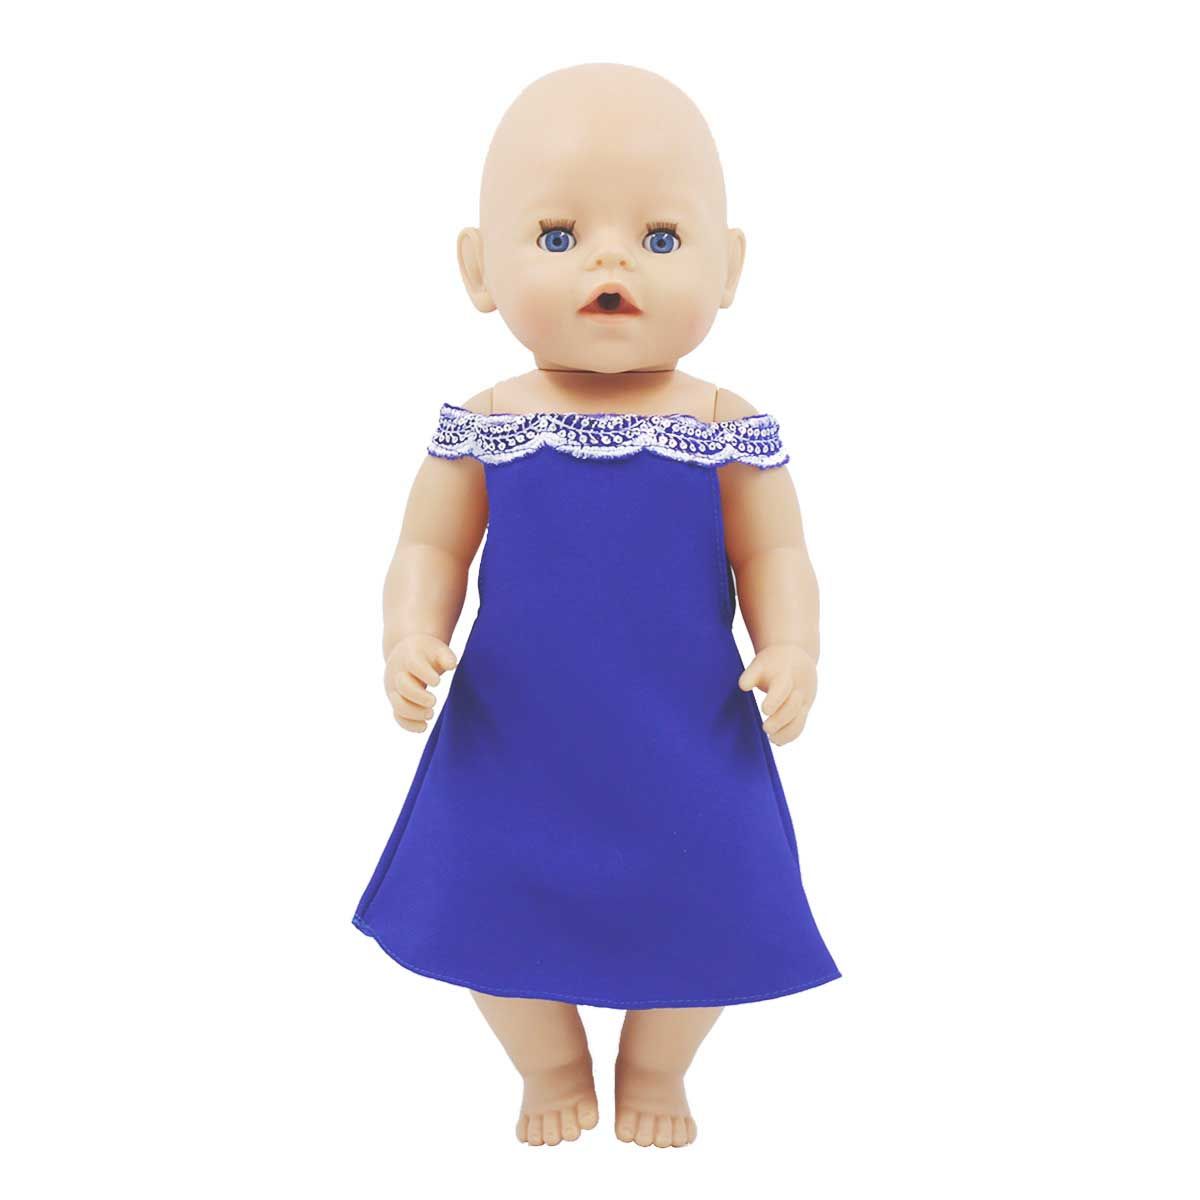 Одежда Dolls Accessories для Беби Бон и пупсов 40 43 см Сапфир одежда для пупсов